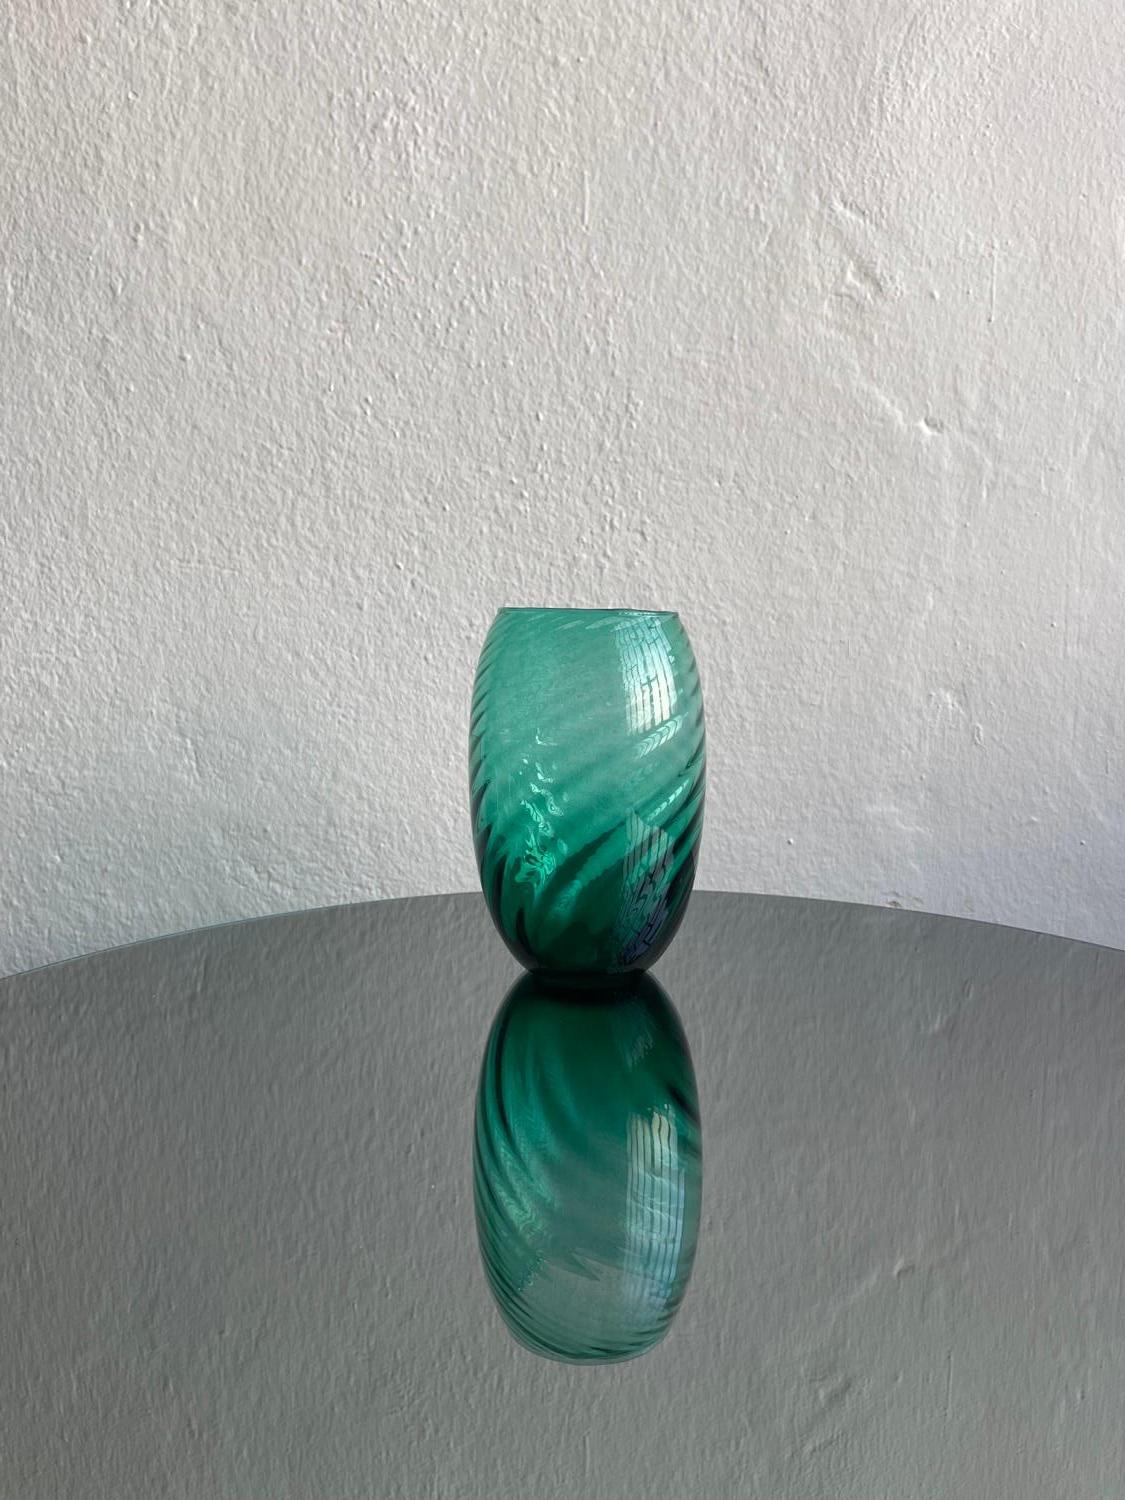 Vase aus mundgeblasenem Glas - Vase aus Murano-Glas - Vase aus Murano-Spirale

Wunderschöne grüne Vase aus mundgeblasenem Murano-Glas, verziert mit einem geprägten Spiralmuster, das über die gesamte Oberfläche verläuft. Ein kleiner, auf den Fotos